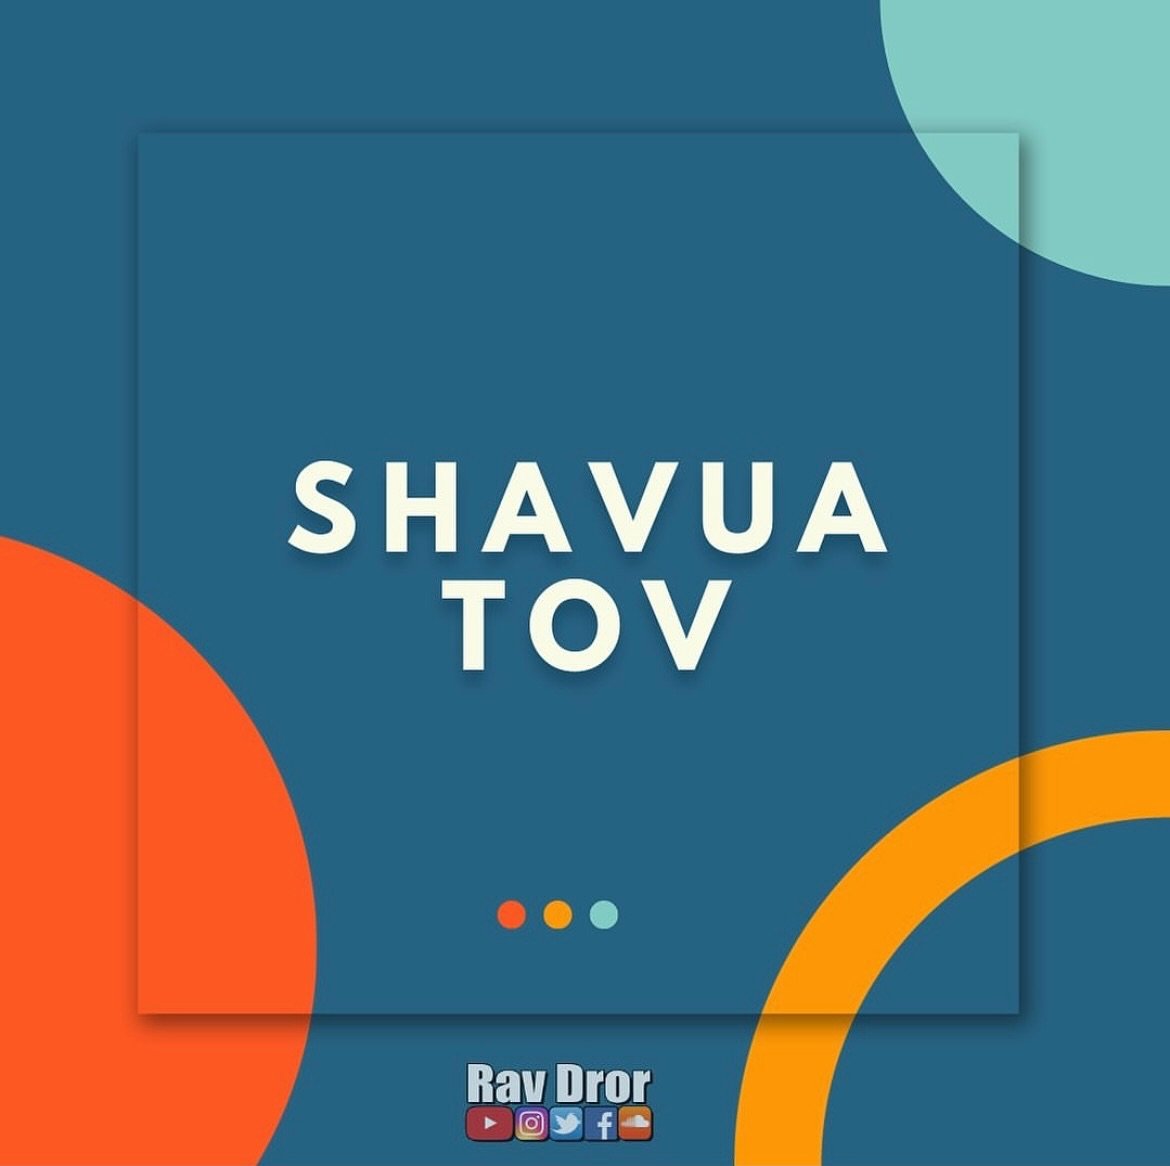 Shavua tov!🙏🏽

#shavuatov #emunah #ravdror #jewishlife #israel